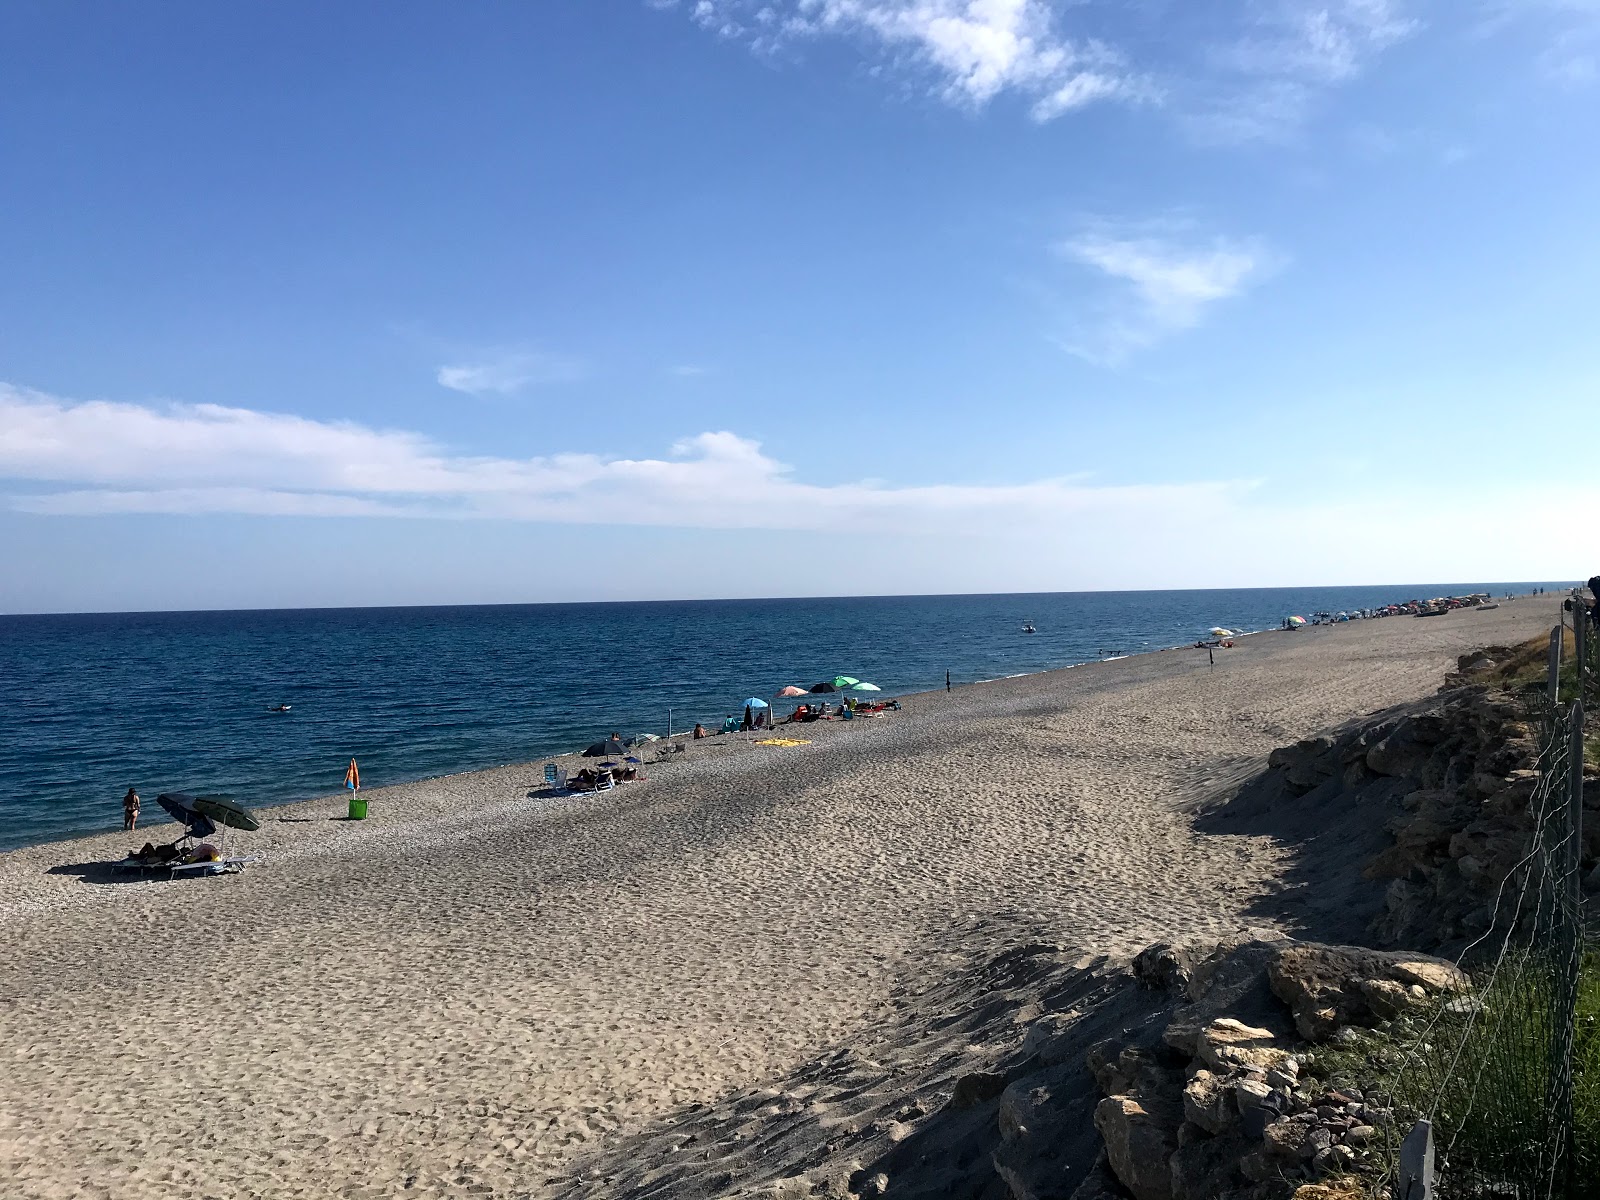 Torre Ellera beach'in fotoğrafı koyu i̇nce çakıl yüzey ile